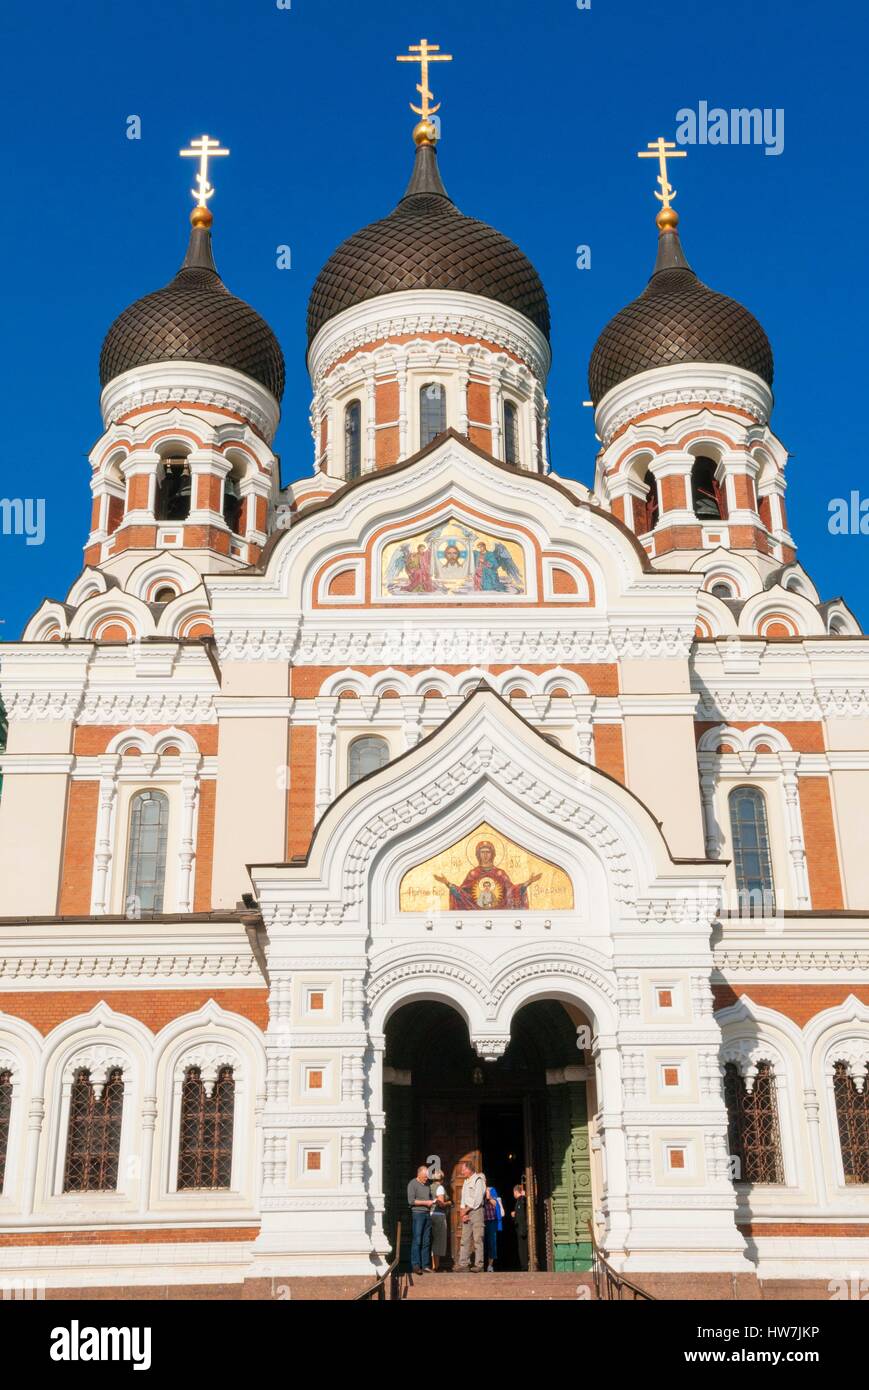 Estonia (Stati Baltici) Città Vecchia di Tallinn sono classificati come patrimonio mondiale dall' UNESCO chiesa russo-ortodossa Alexander Nevsky Cathedral in Foto Stock